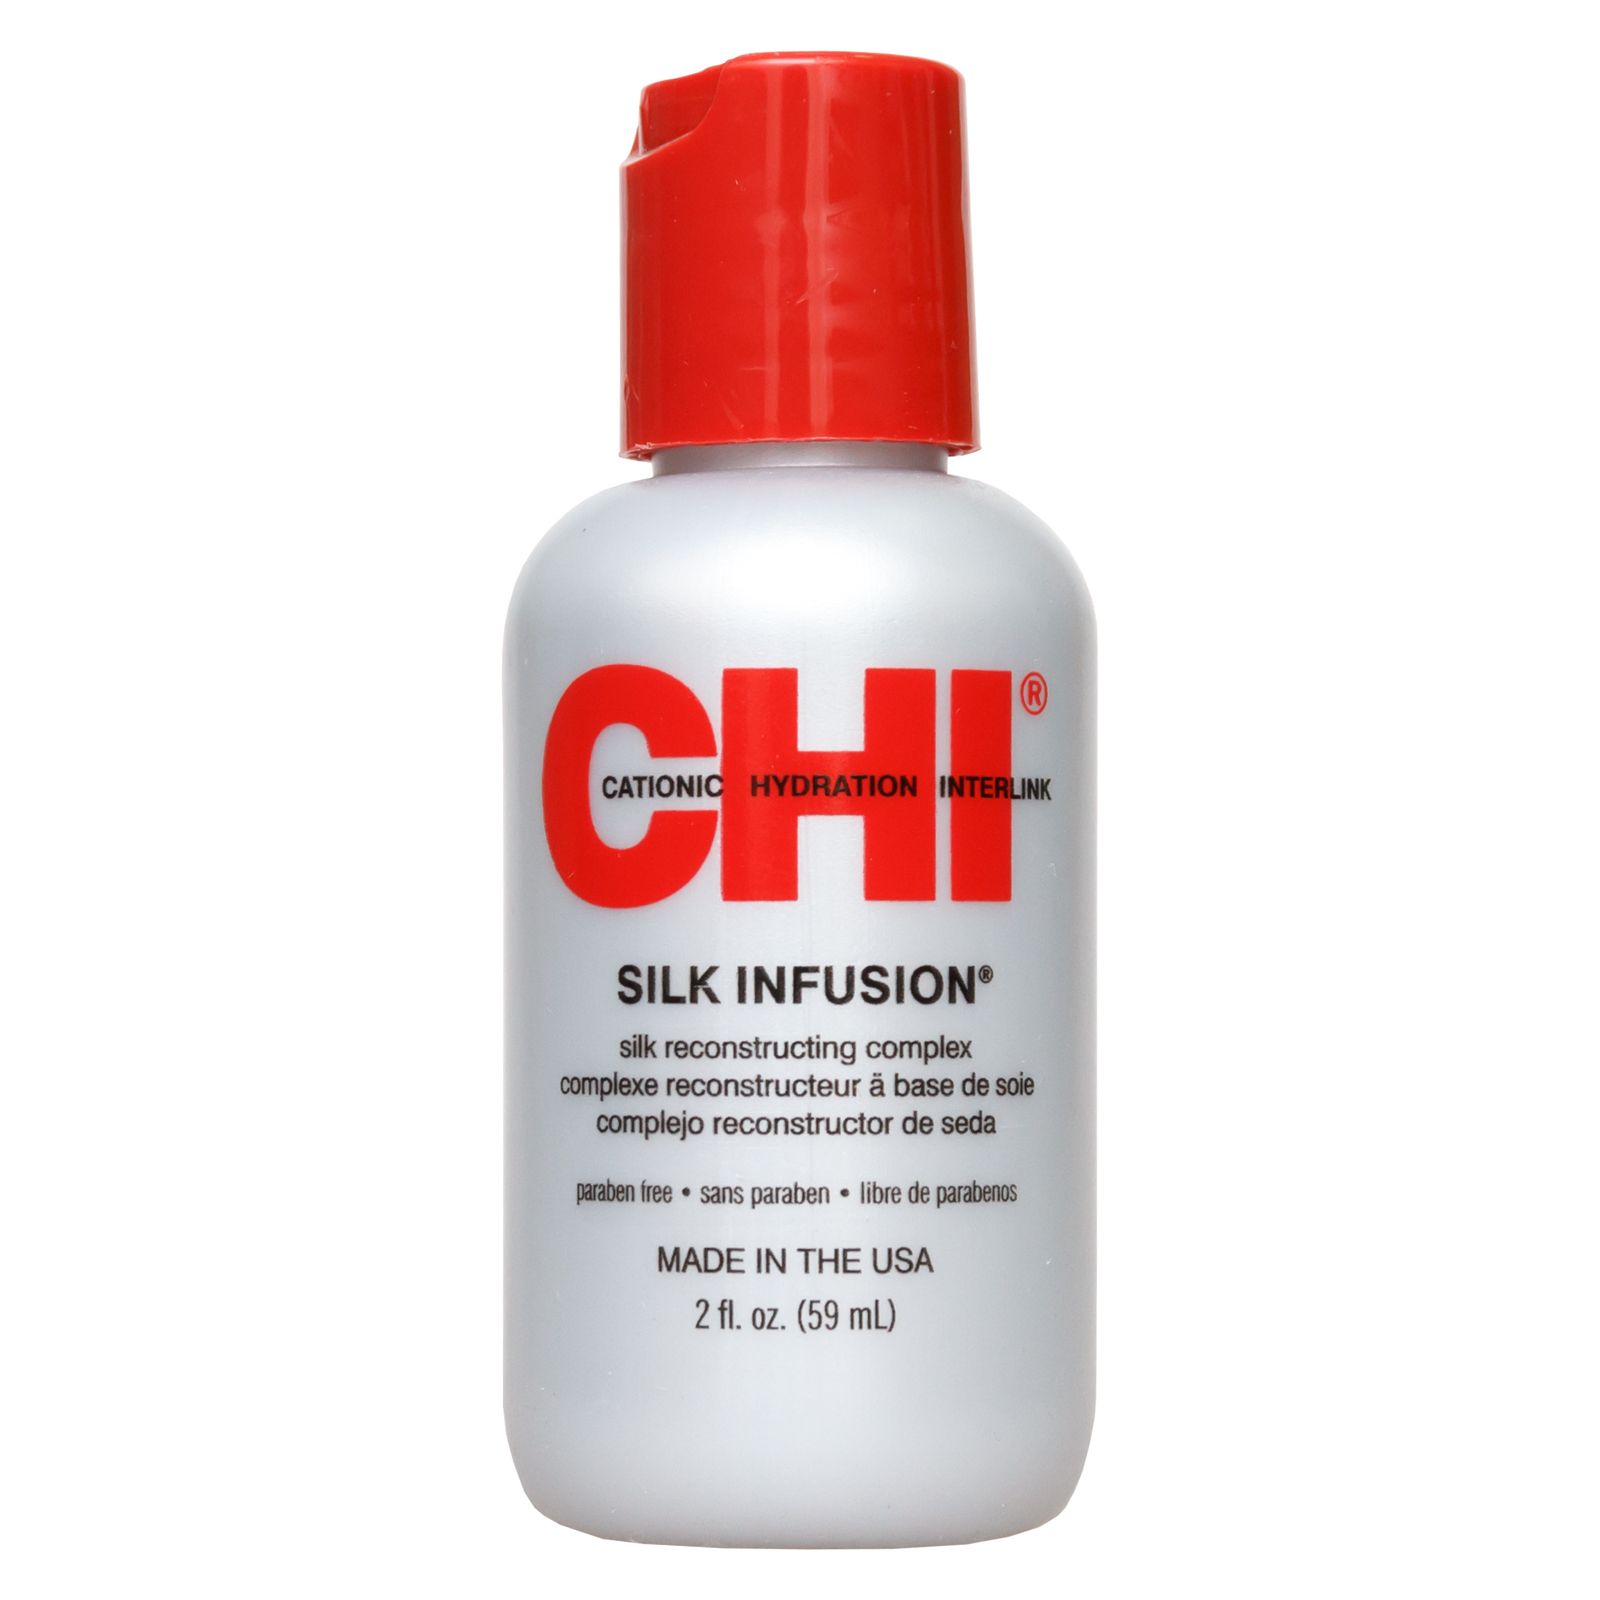 CHI Infra Silk Infusion - Гель восстанавливающий «Шелковая инфузия» 59 мл CHI (США) купить по цене 2 288 руб.